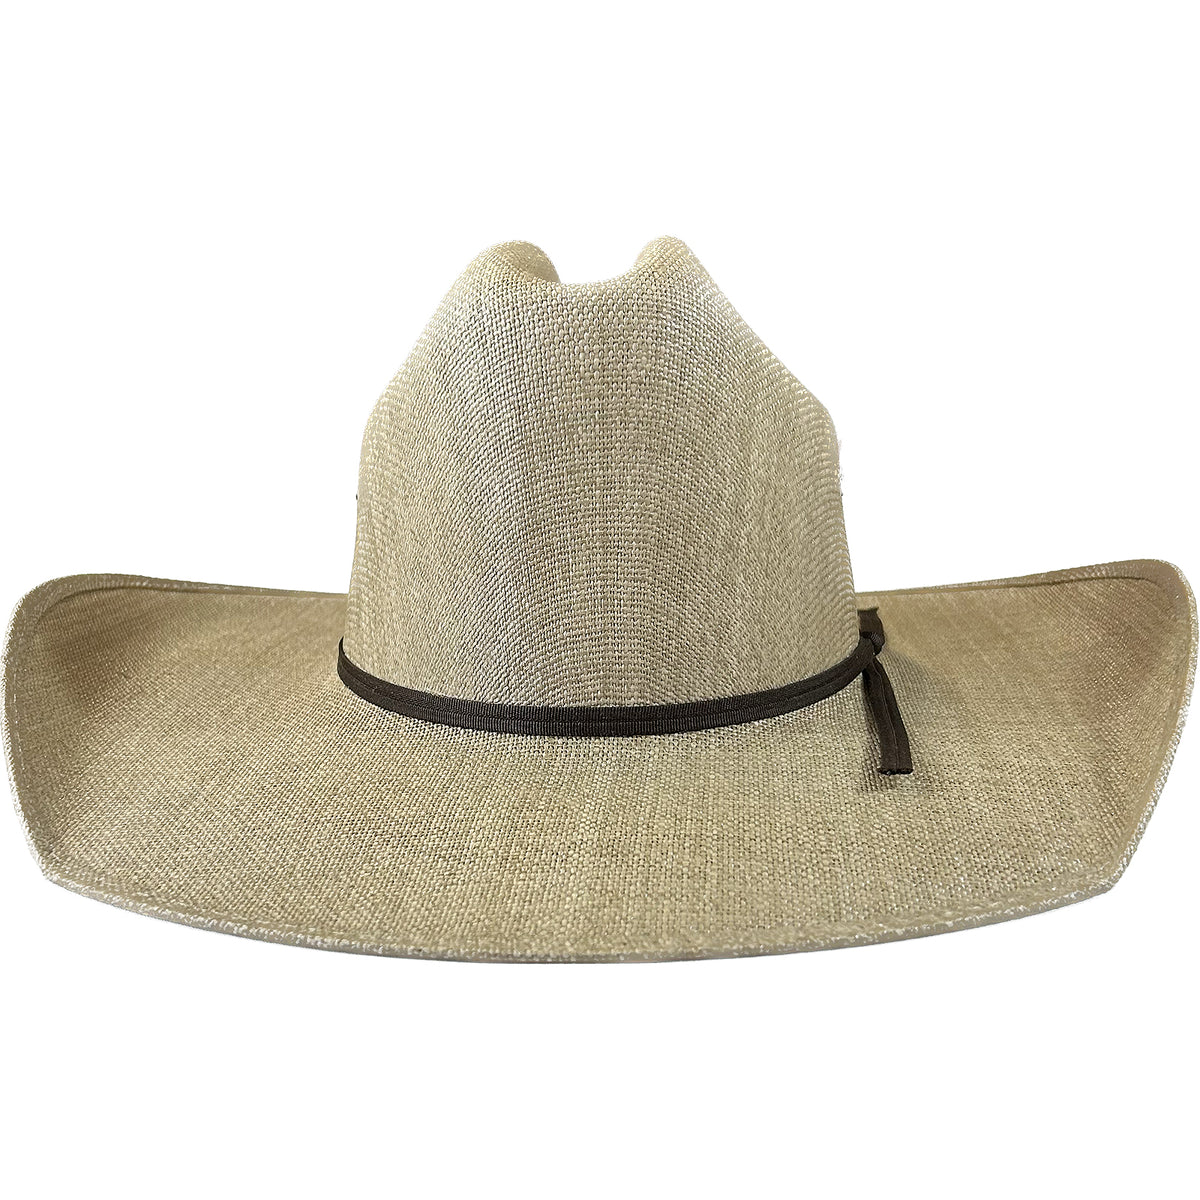 Goldcoast Braun Western Cowboy Straw Hat 